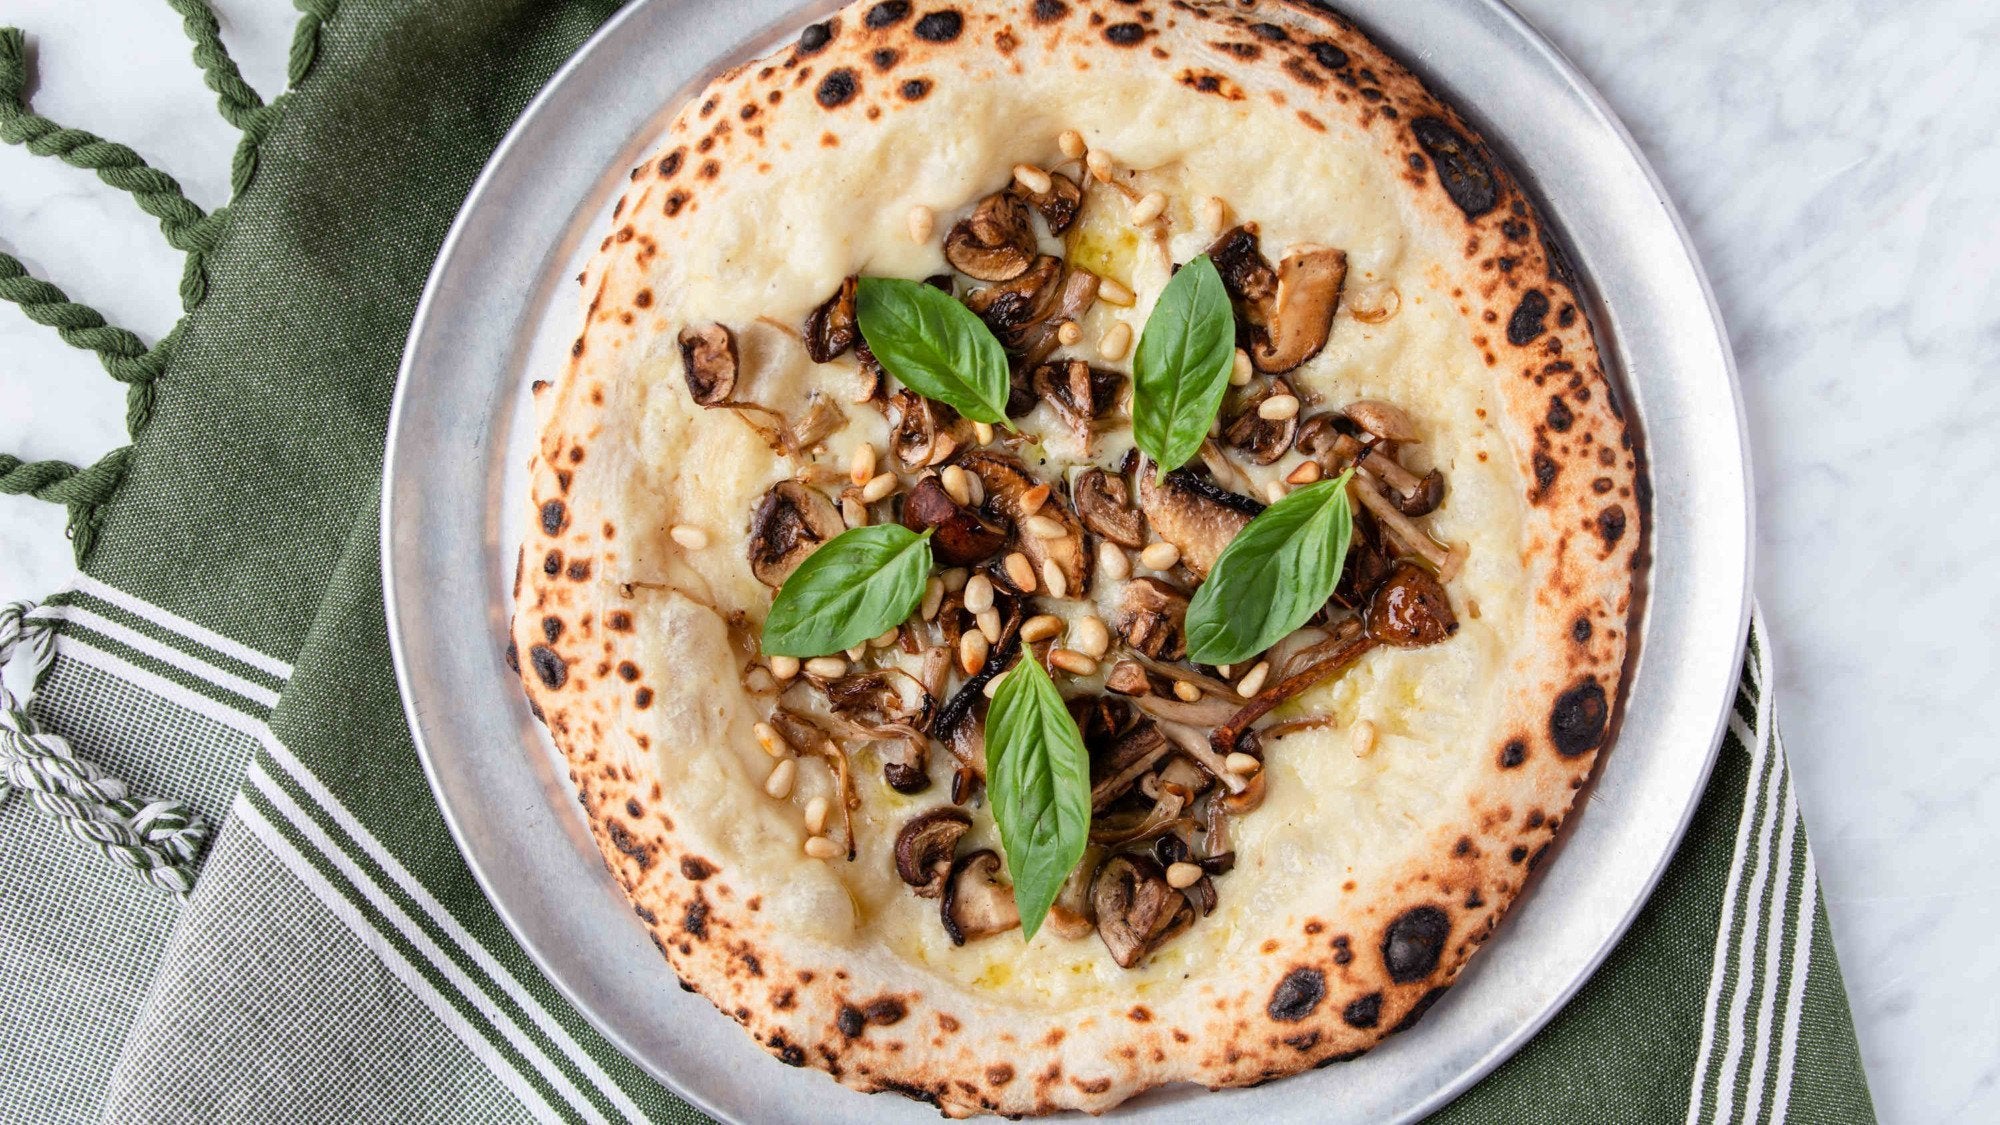 Jerusulam Artichoke, Wild Mushroom & Pine Nut Pizza Recipe